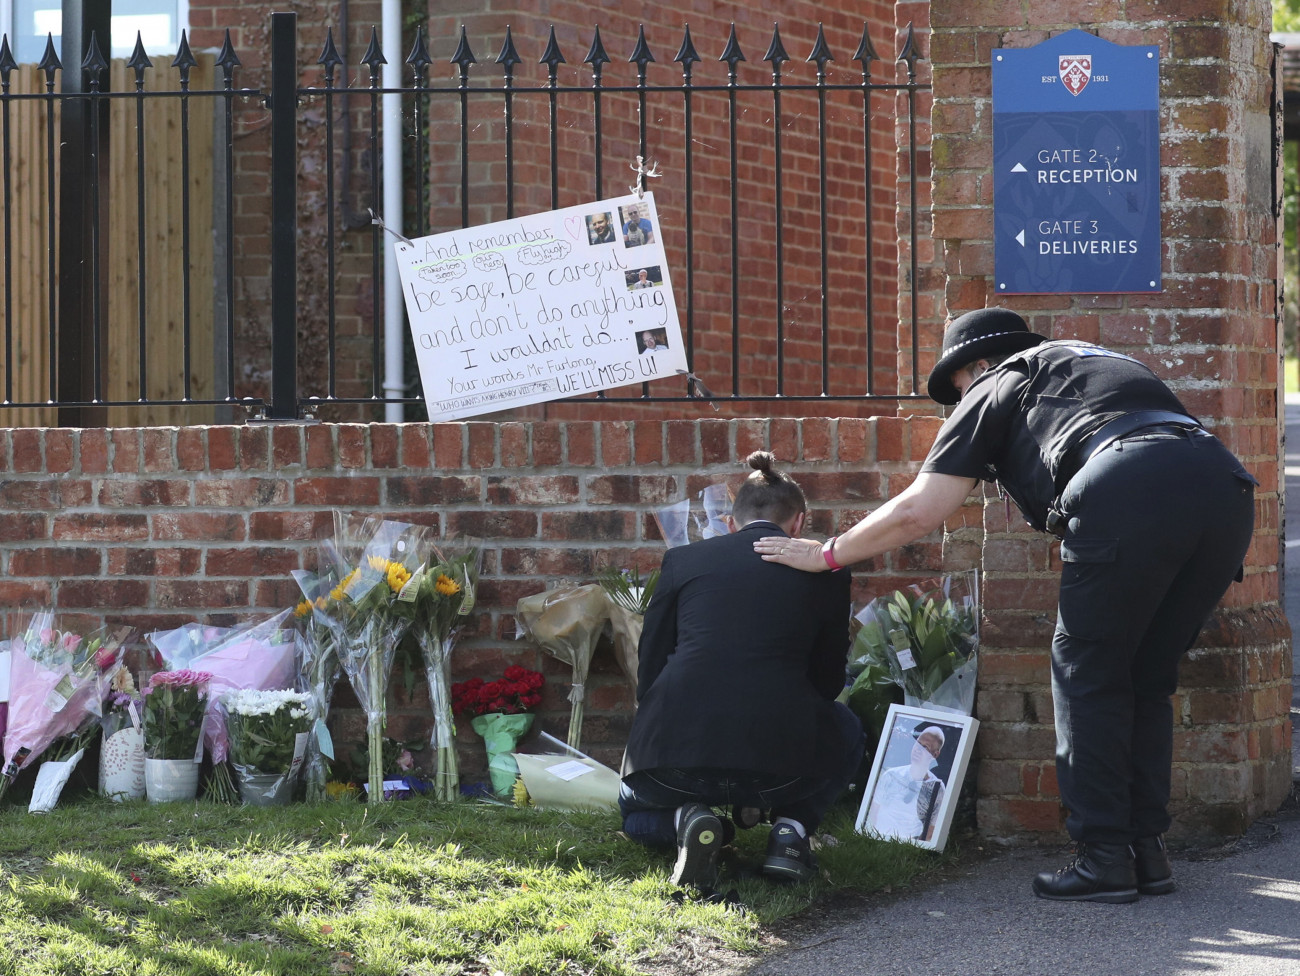 Reading, 2020. június 22.
Virágokat helyez el egy gyászoló az angliai Wokingham egyik iskolája előtt 2020. június 22-én. James Furlong, az iskola egyik tanára életét veszítette a readingsi Forbury Gardens nevű parkban, amikor egy 25 éves férfi késsel megtámadta június 20-án. A támadásban még két ember meghalt, hárman súlyosan megsebesültek. A gyilkossággal gyanúsítottat férfit őrizetbe vették.
MTI/AP/PA/Steve Parsons